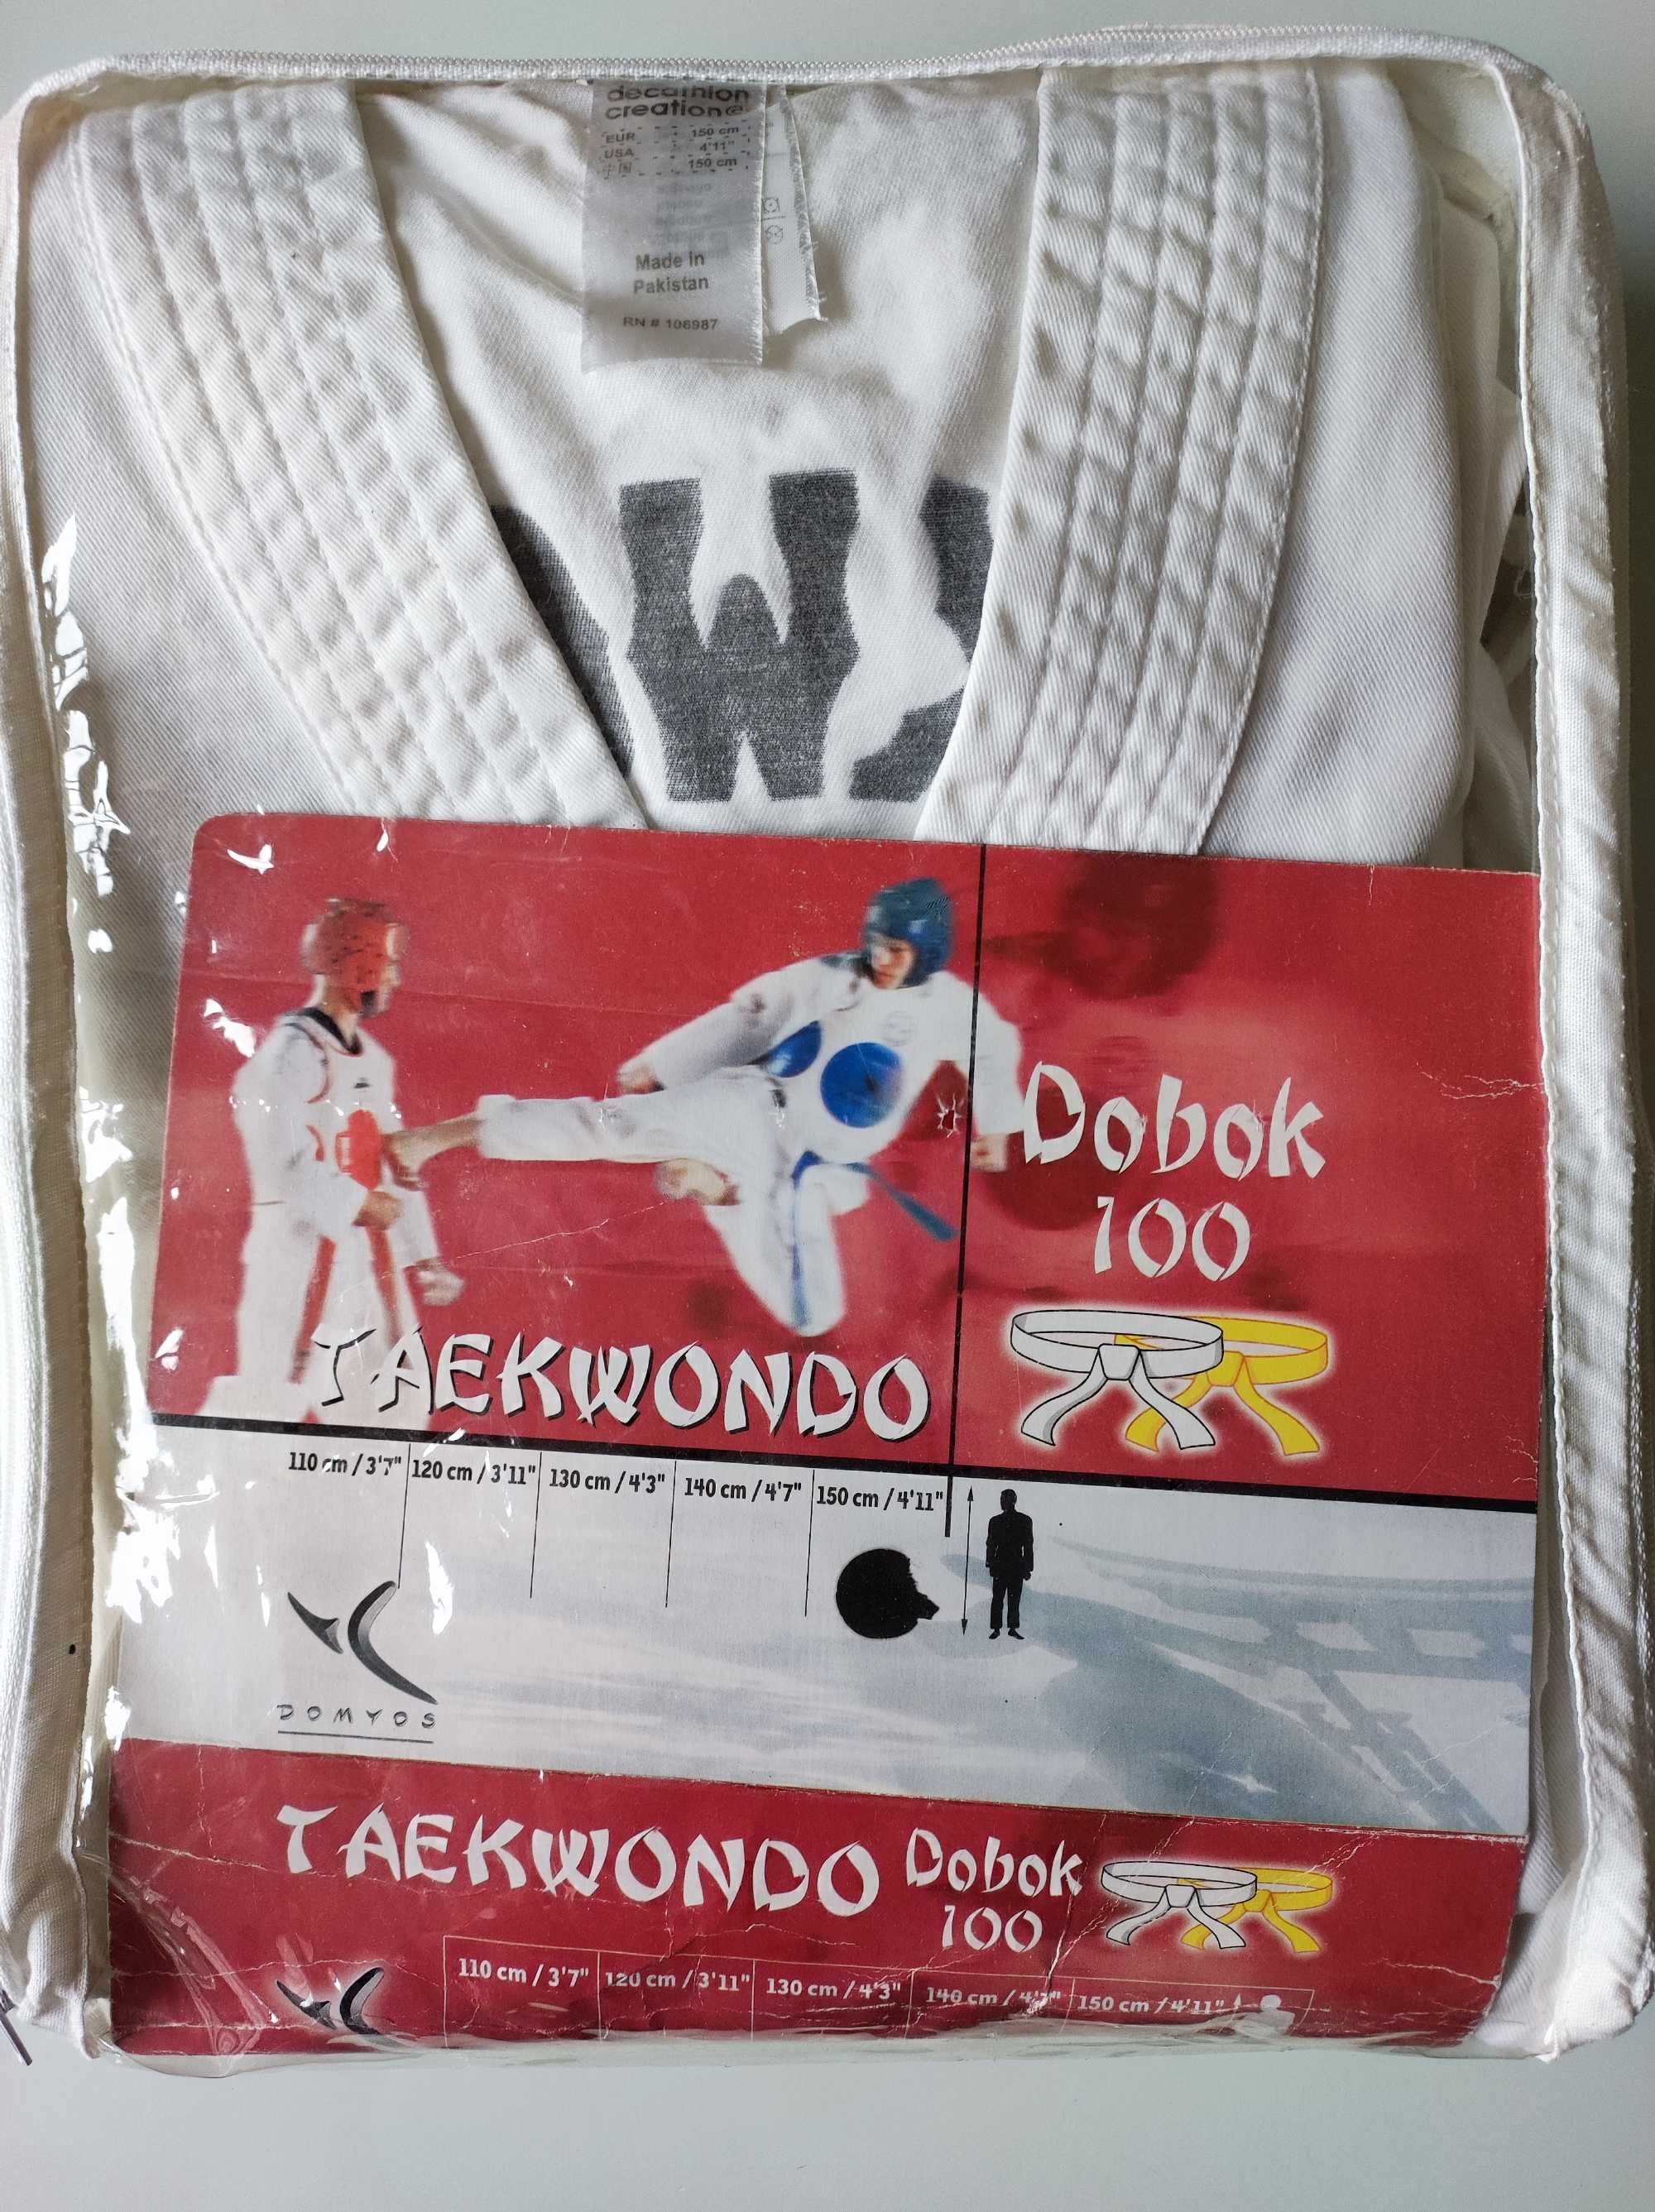 Fato Taekwondo Dobot 100 da Domyos 150 cm